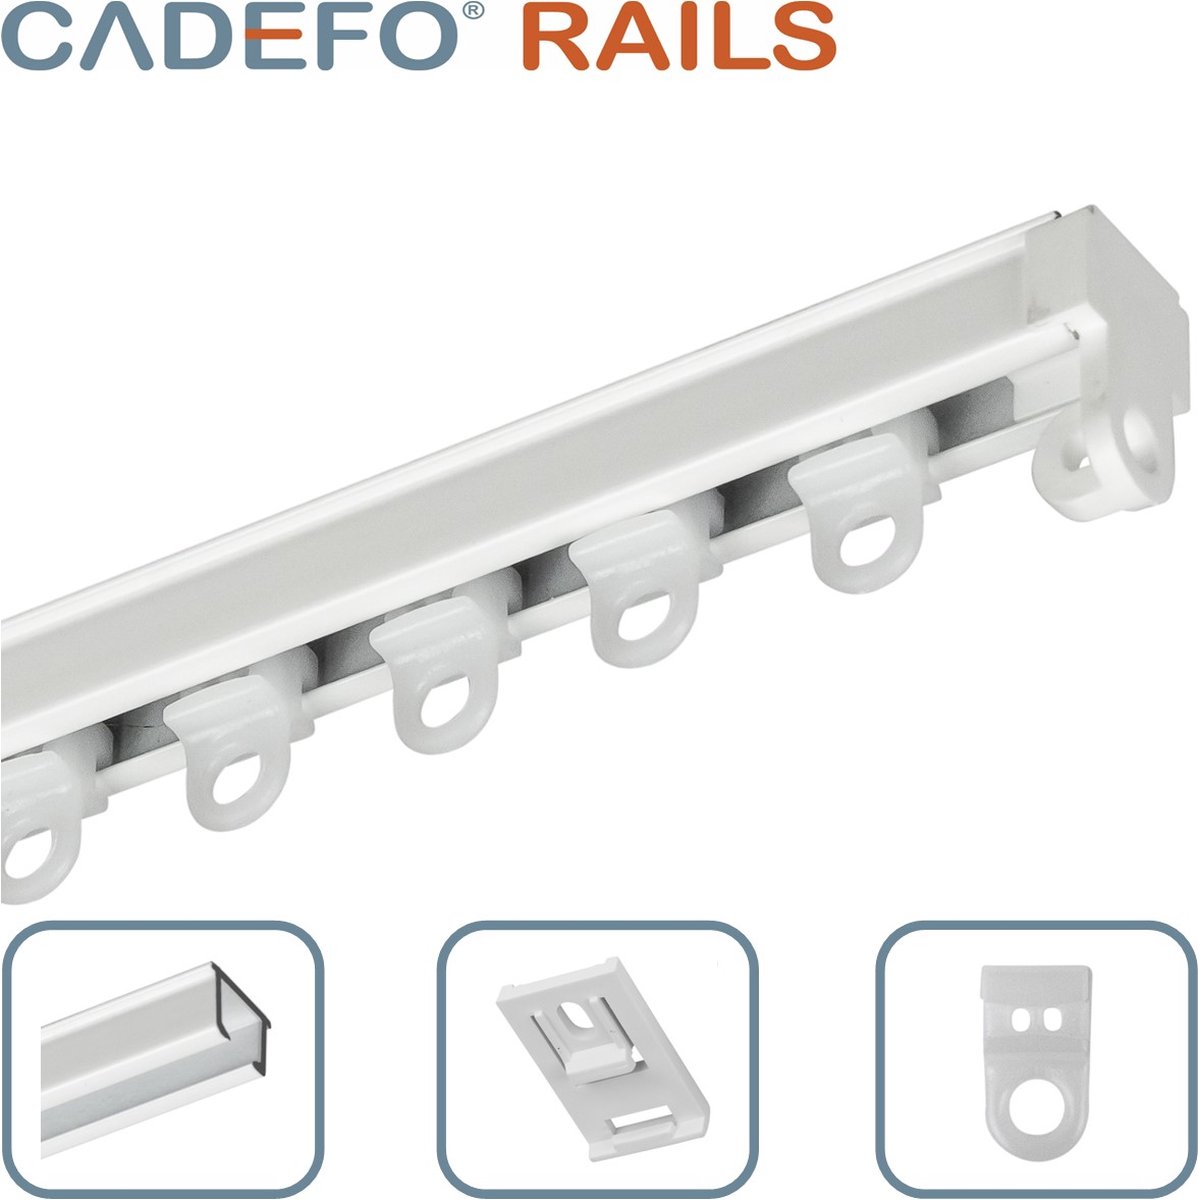 CADEFO RAILS (501 - 550 cm) Gordijnrails - Compleet op maat! - UIT 1 STUK - Leverbaar tot 6 meter - Plafondbevestiging - Lengte 511 cm